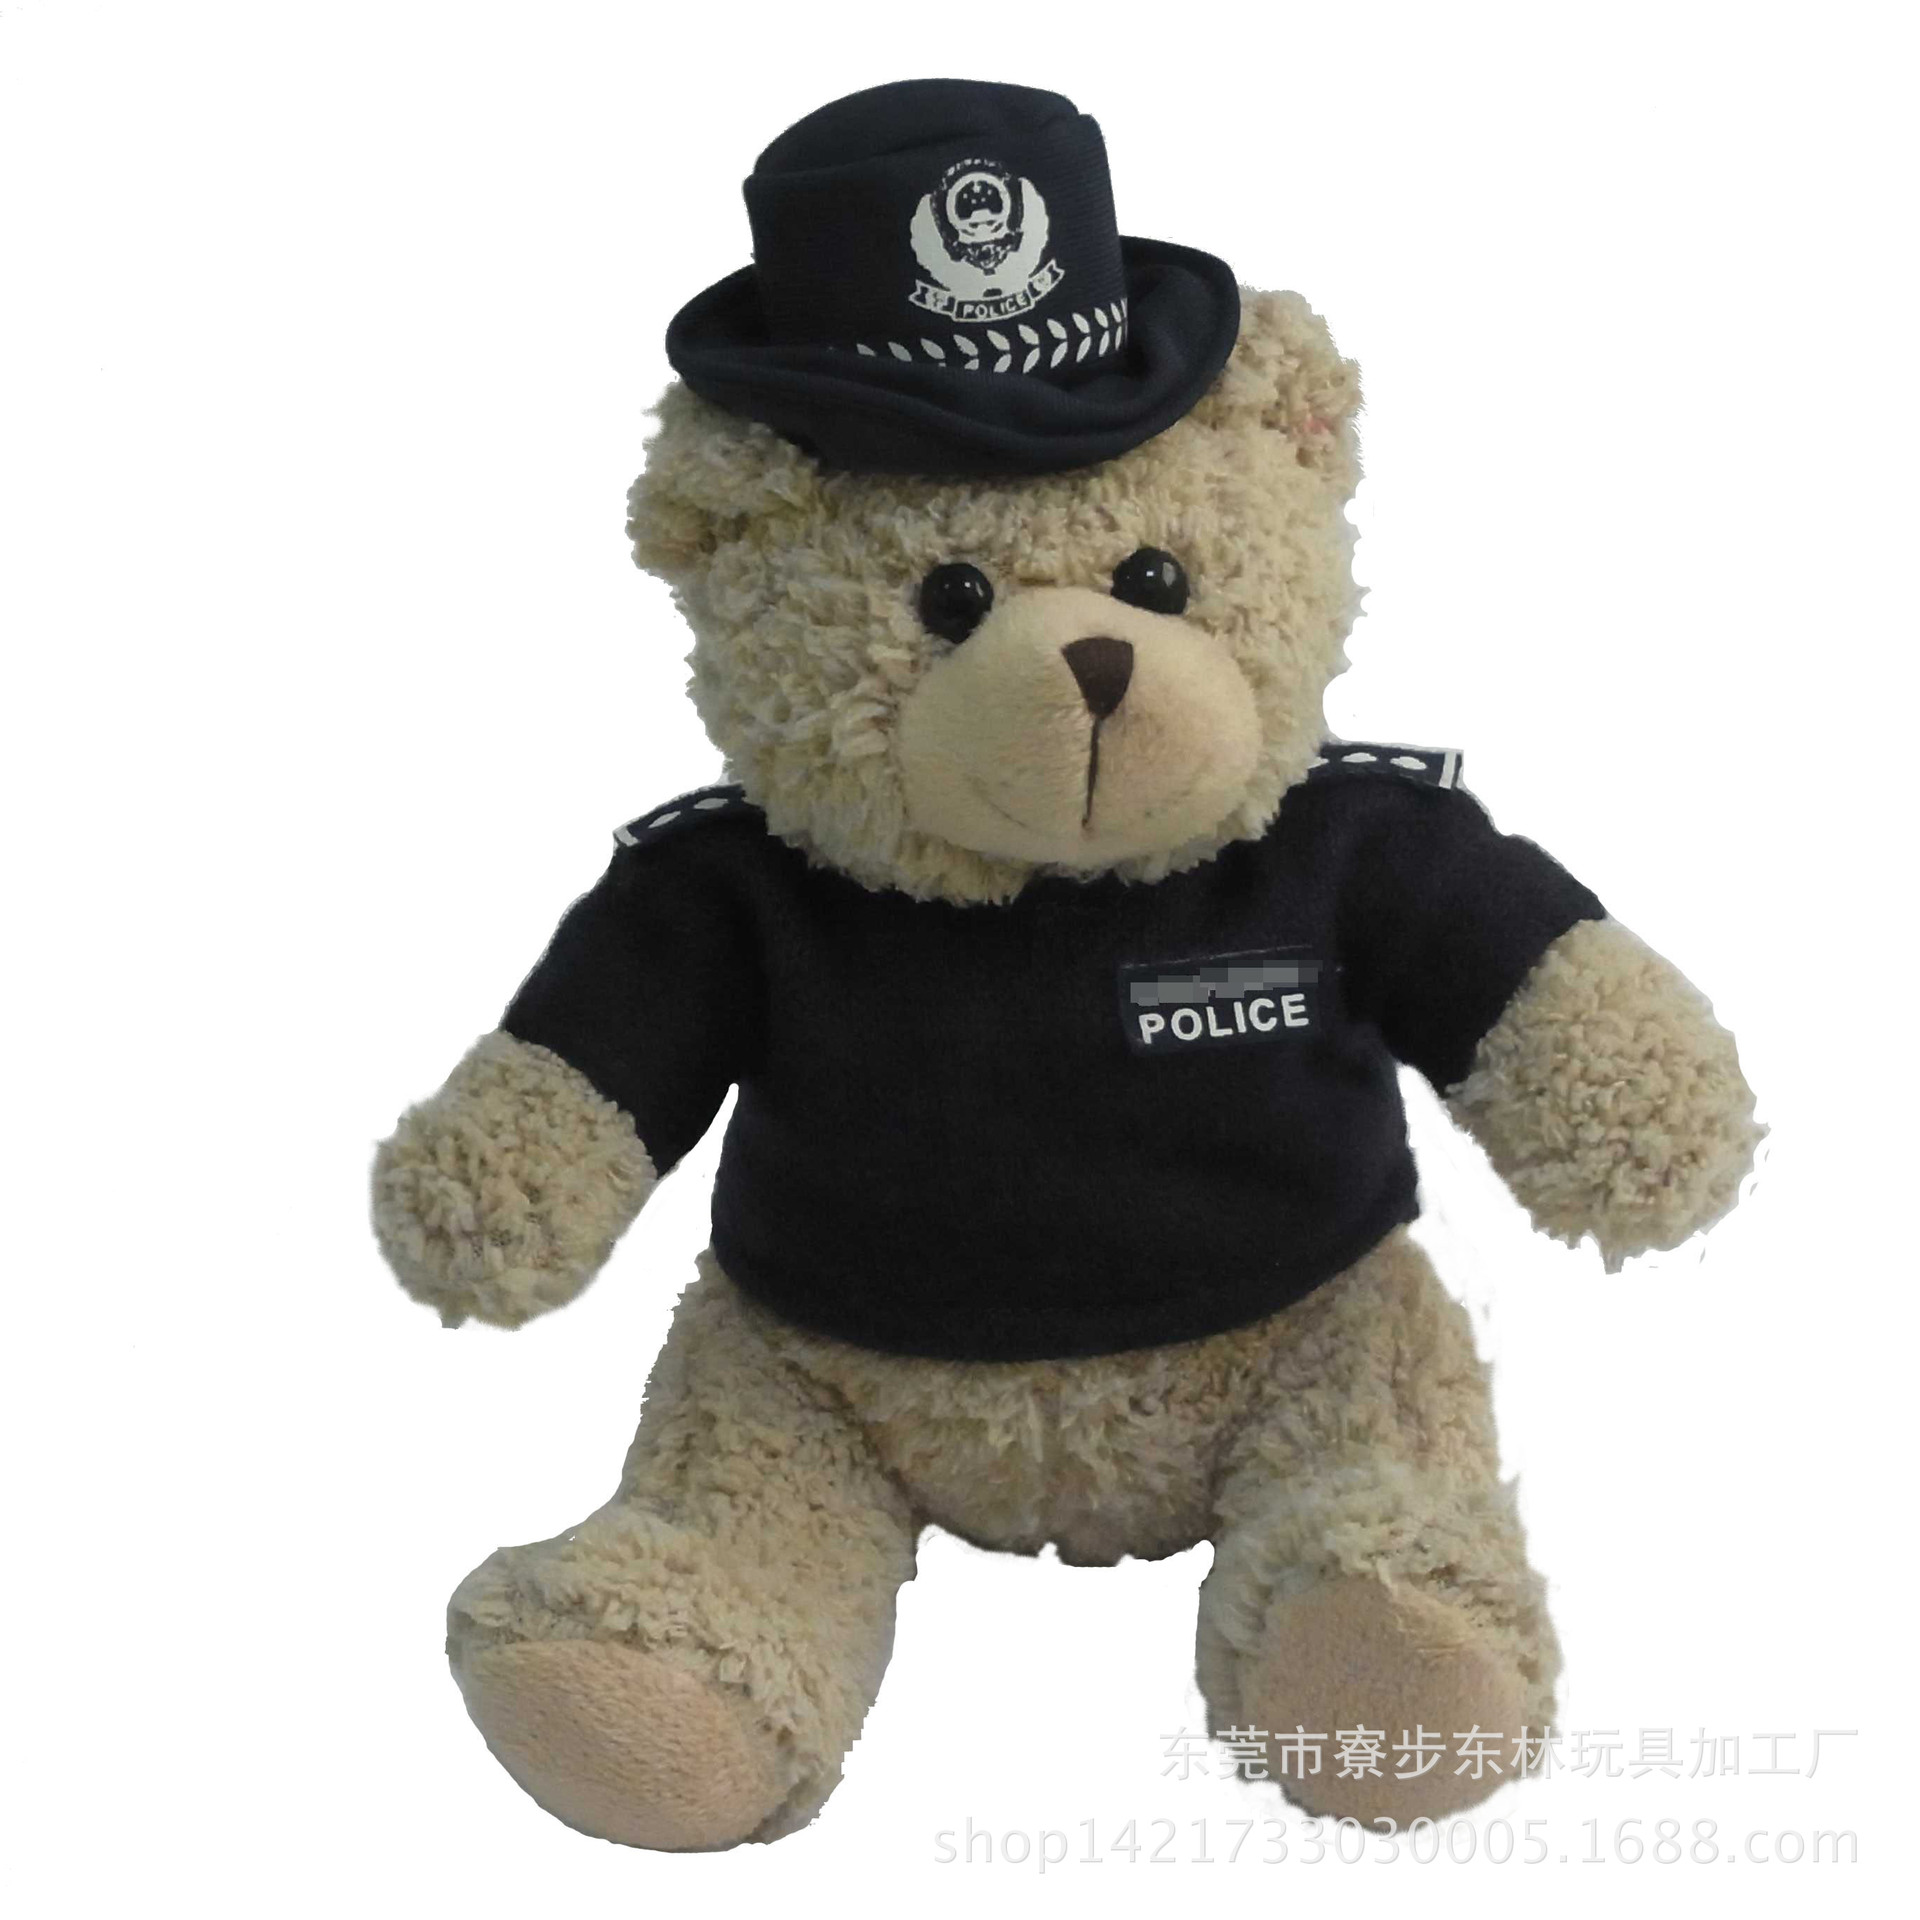 定做毛绒玩具小熊警察 18cm卡通可爱泰迪熊公仔礼品